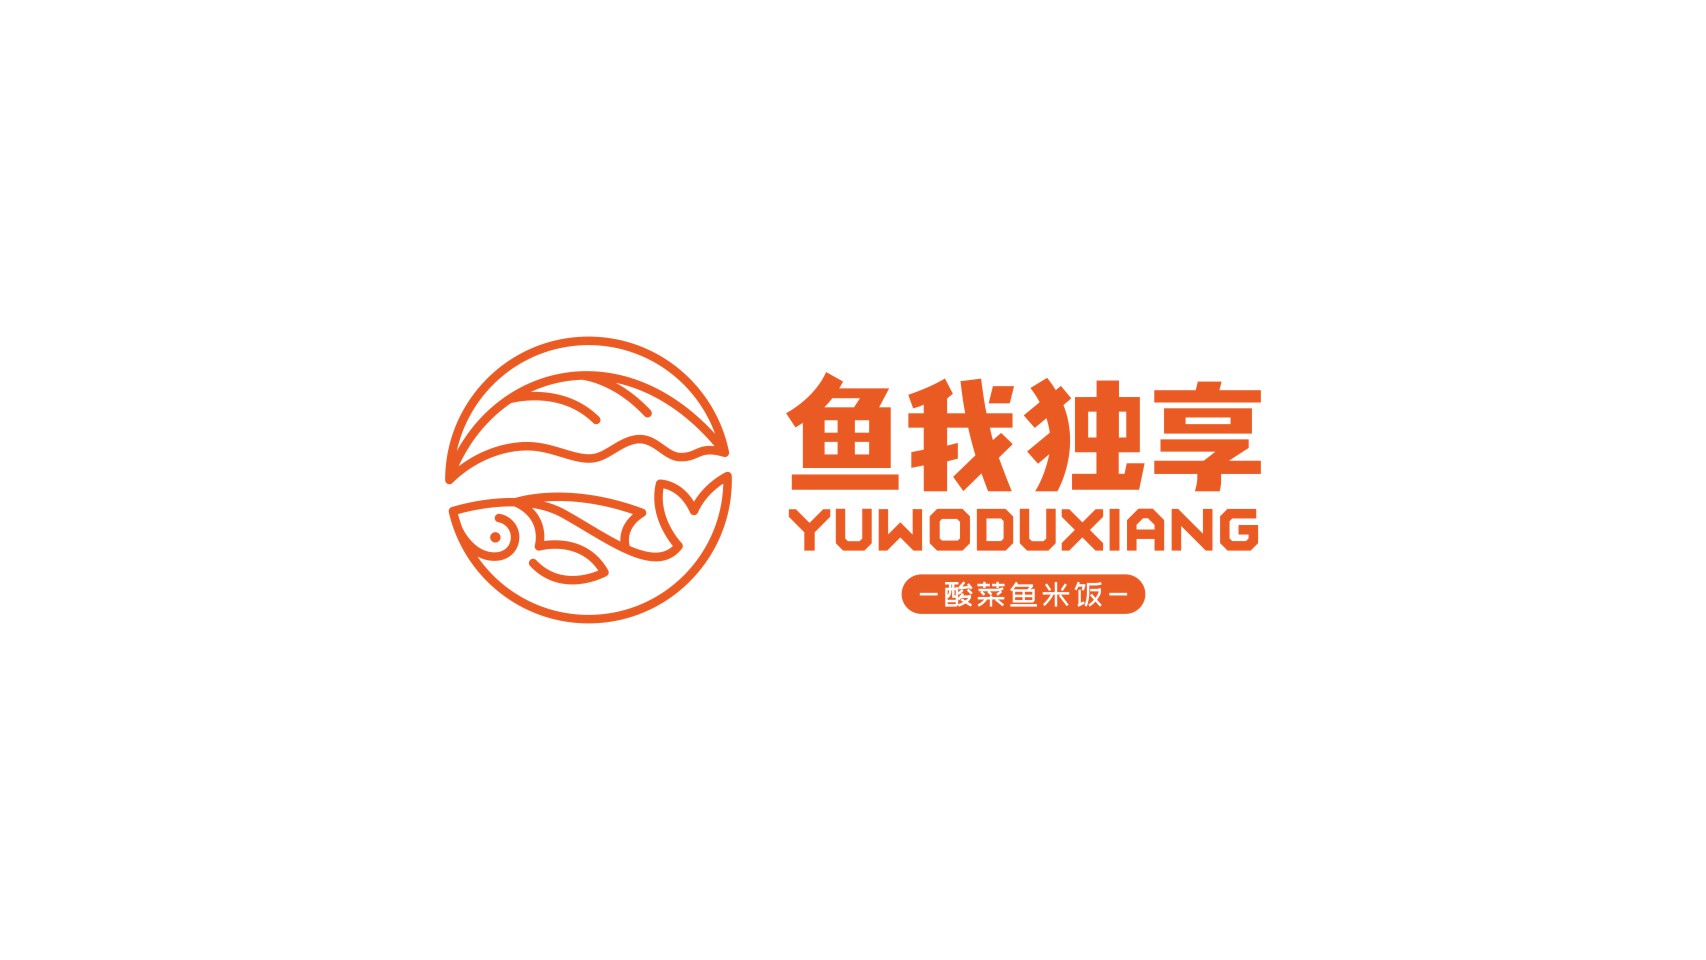 鱼拿酸菜鱼logo图片